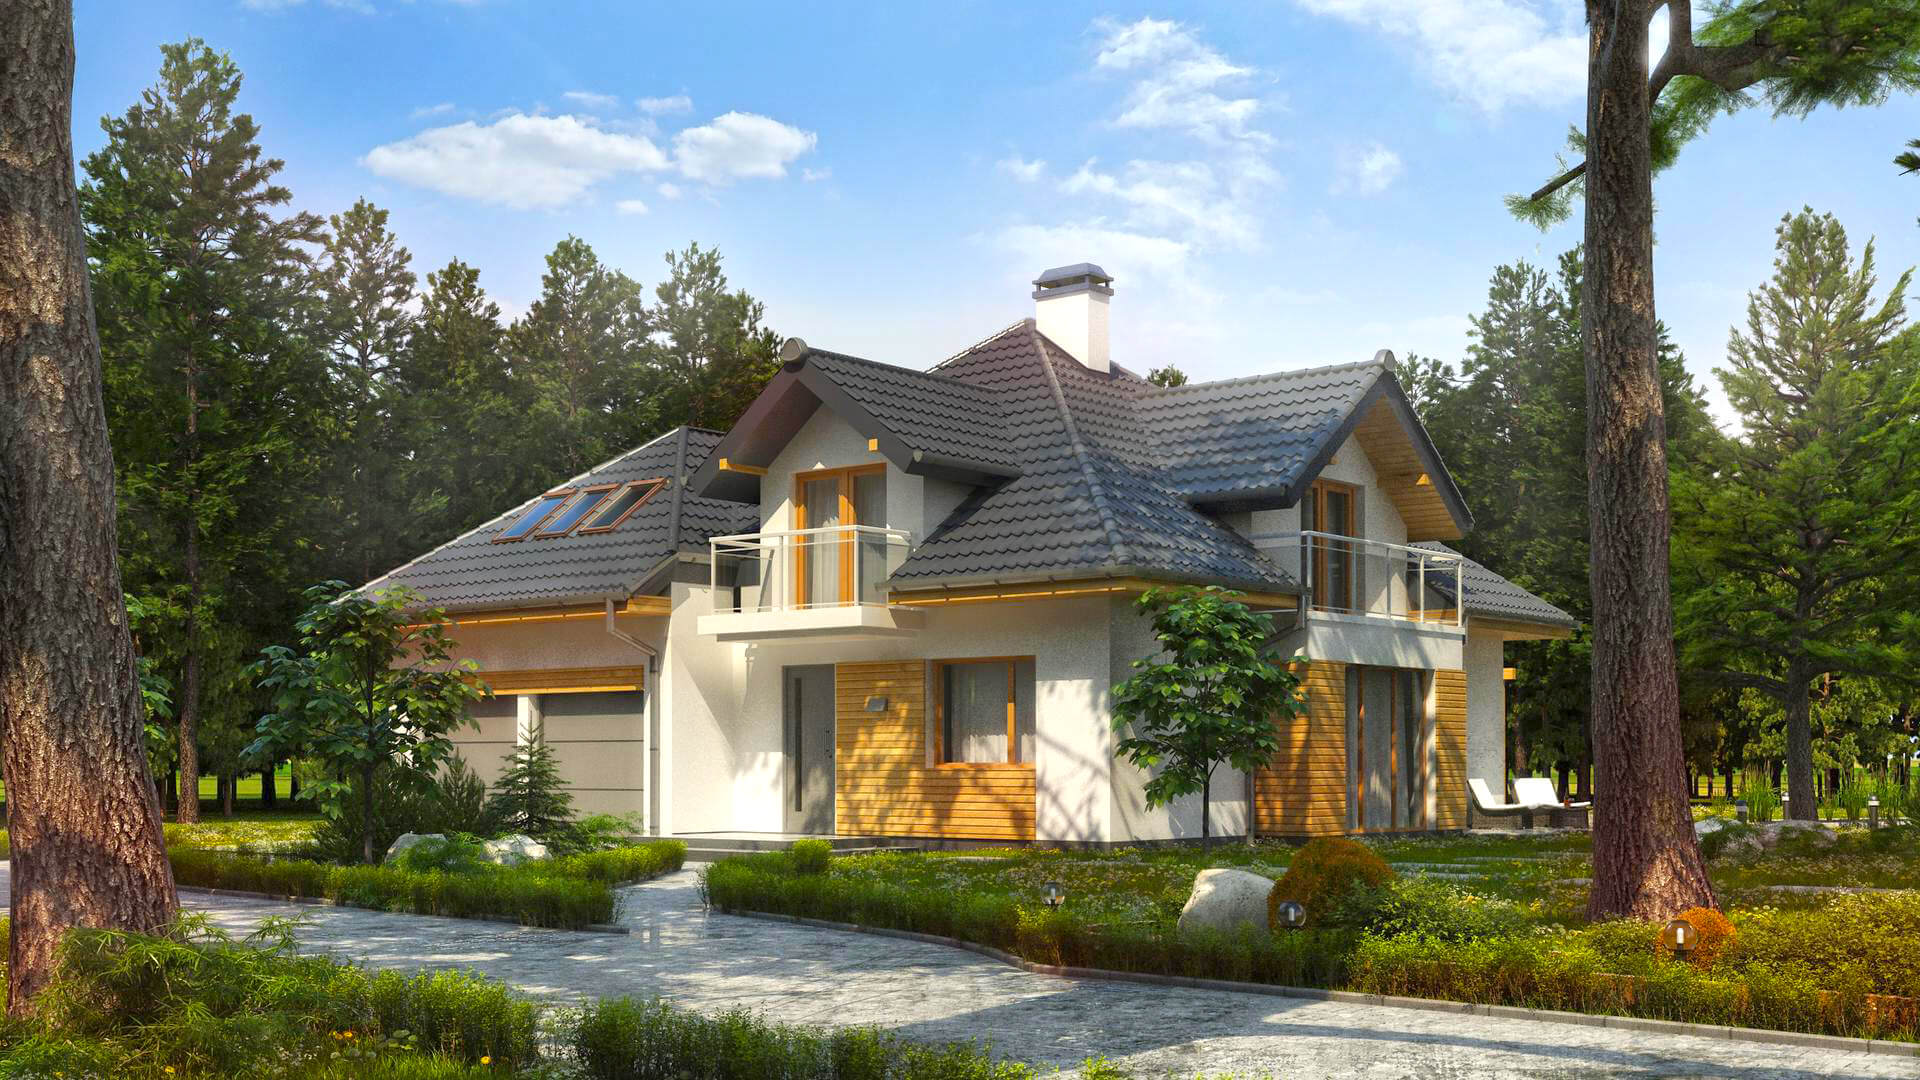 Готовые проекты домов для строительства Краснодар с коммуникациями, проектирование и строительство жилых домов